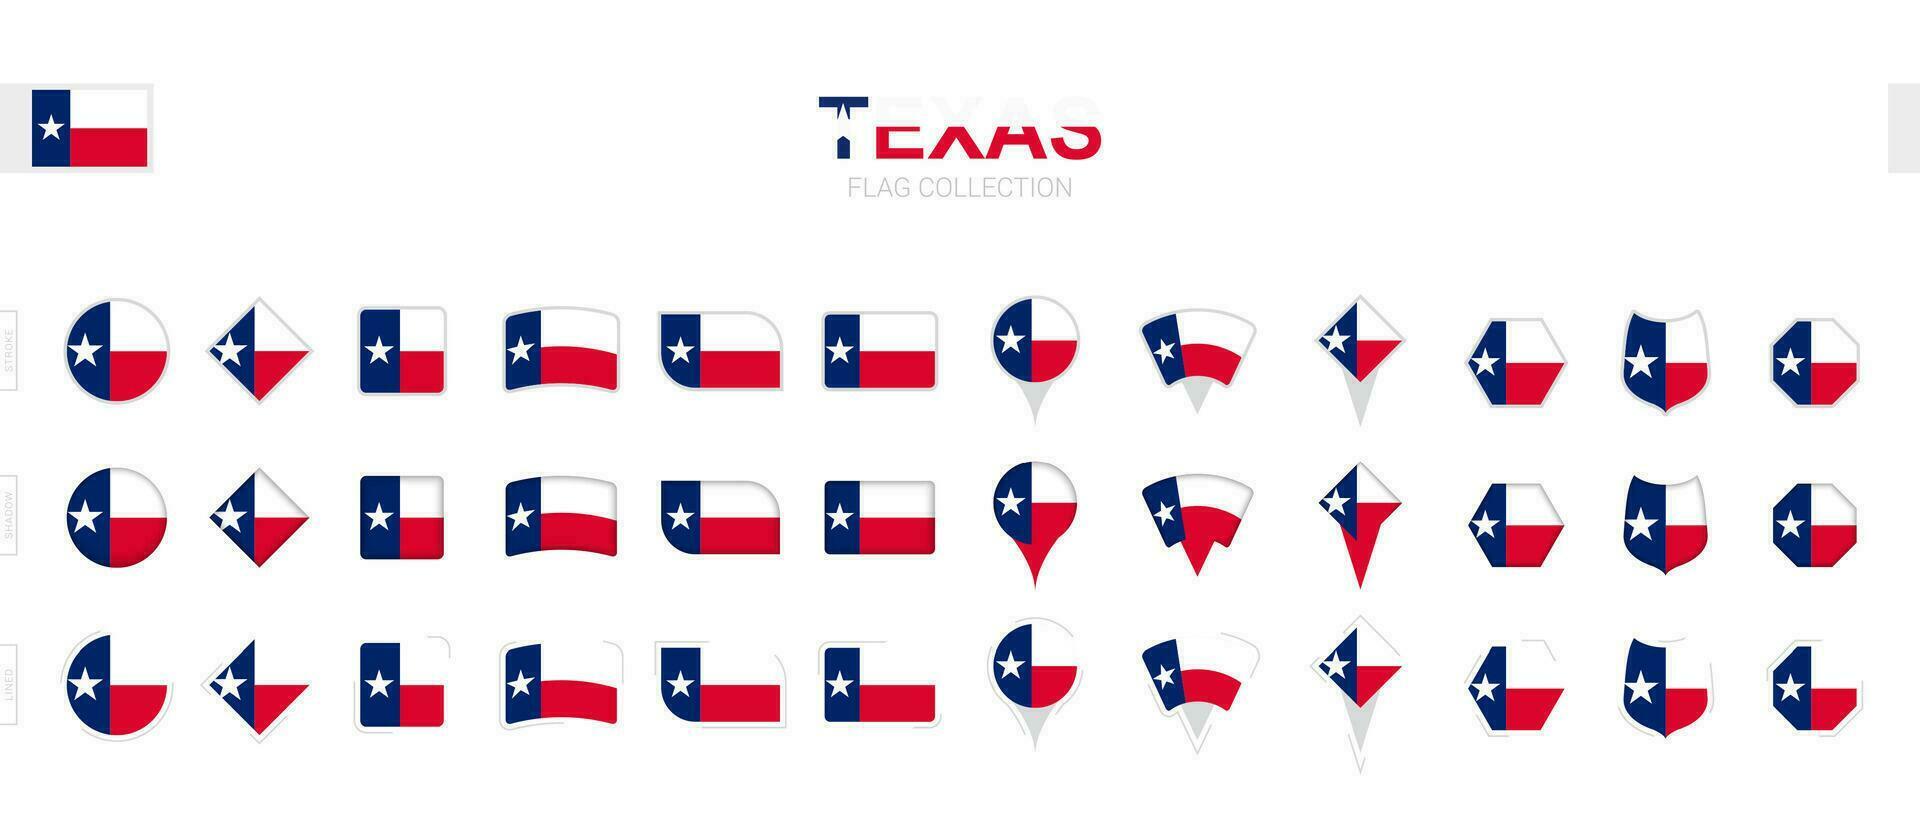 grande collezione di Texas bandiere di vario forme e effetti. vettore